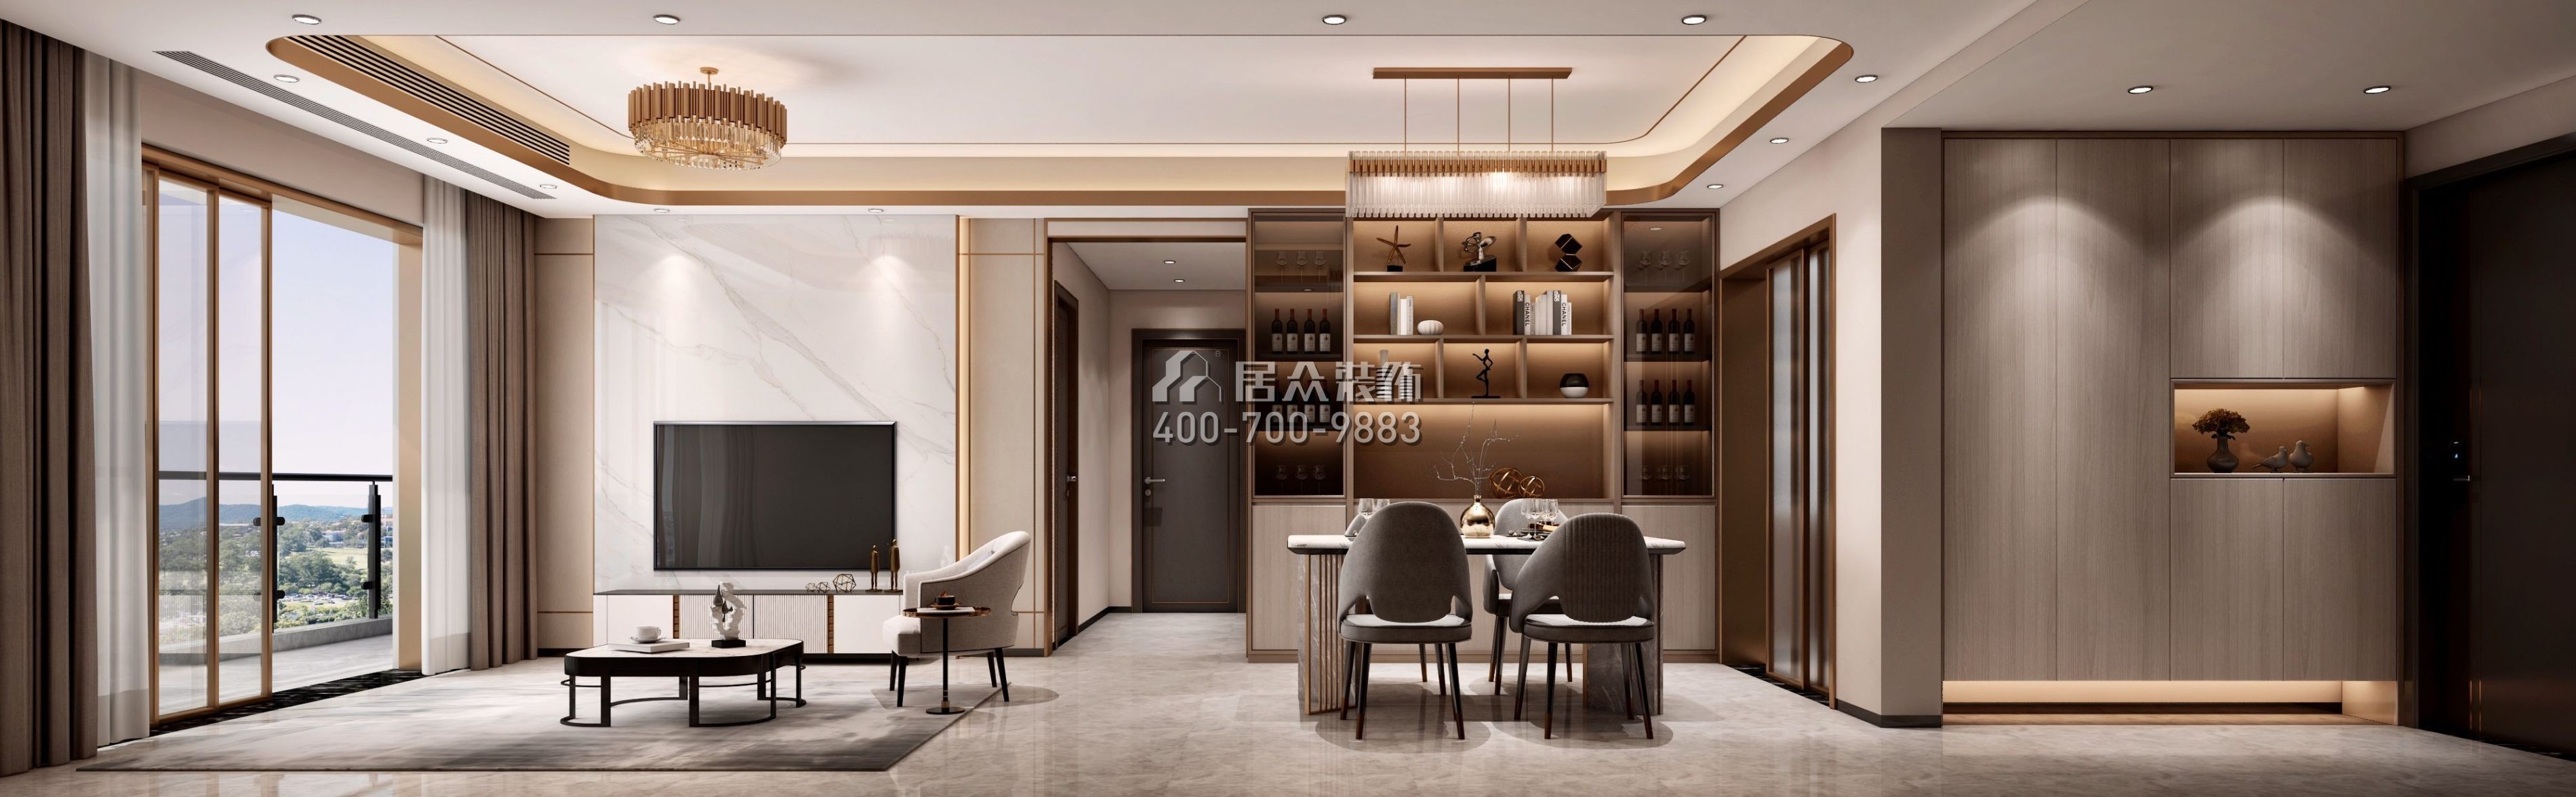 天鹅堡三期122平方米现代简约风格平层户型客餐厅一体装修效果图